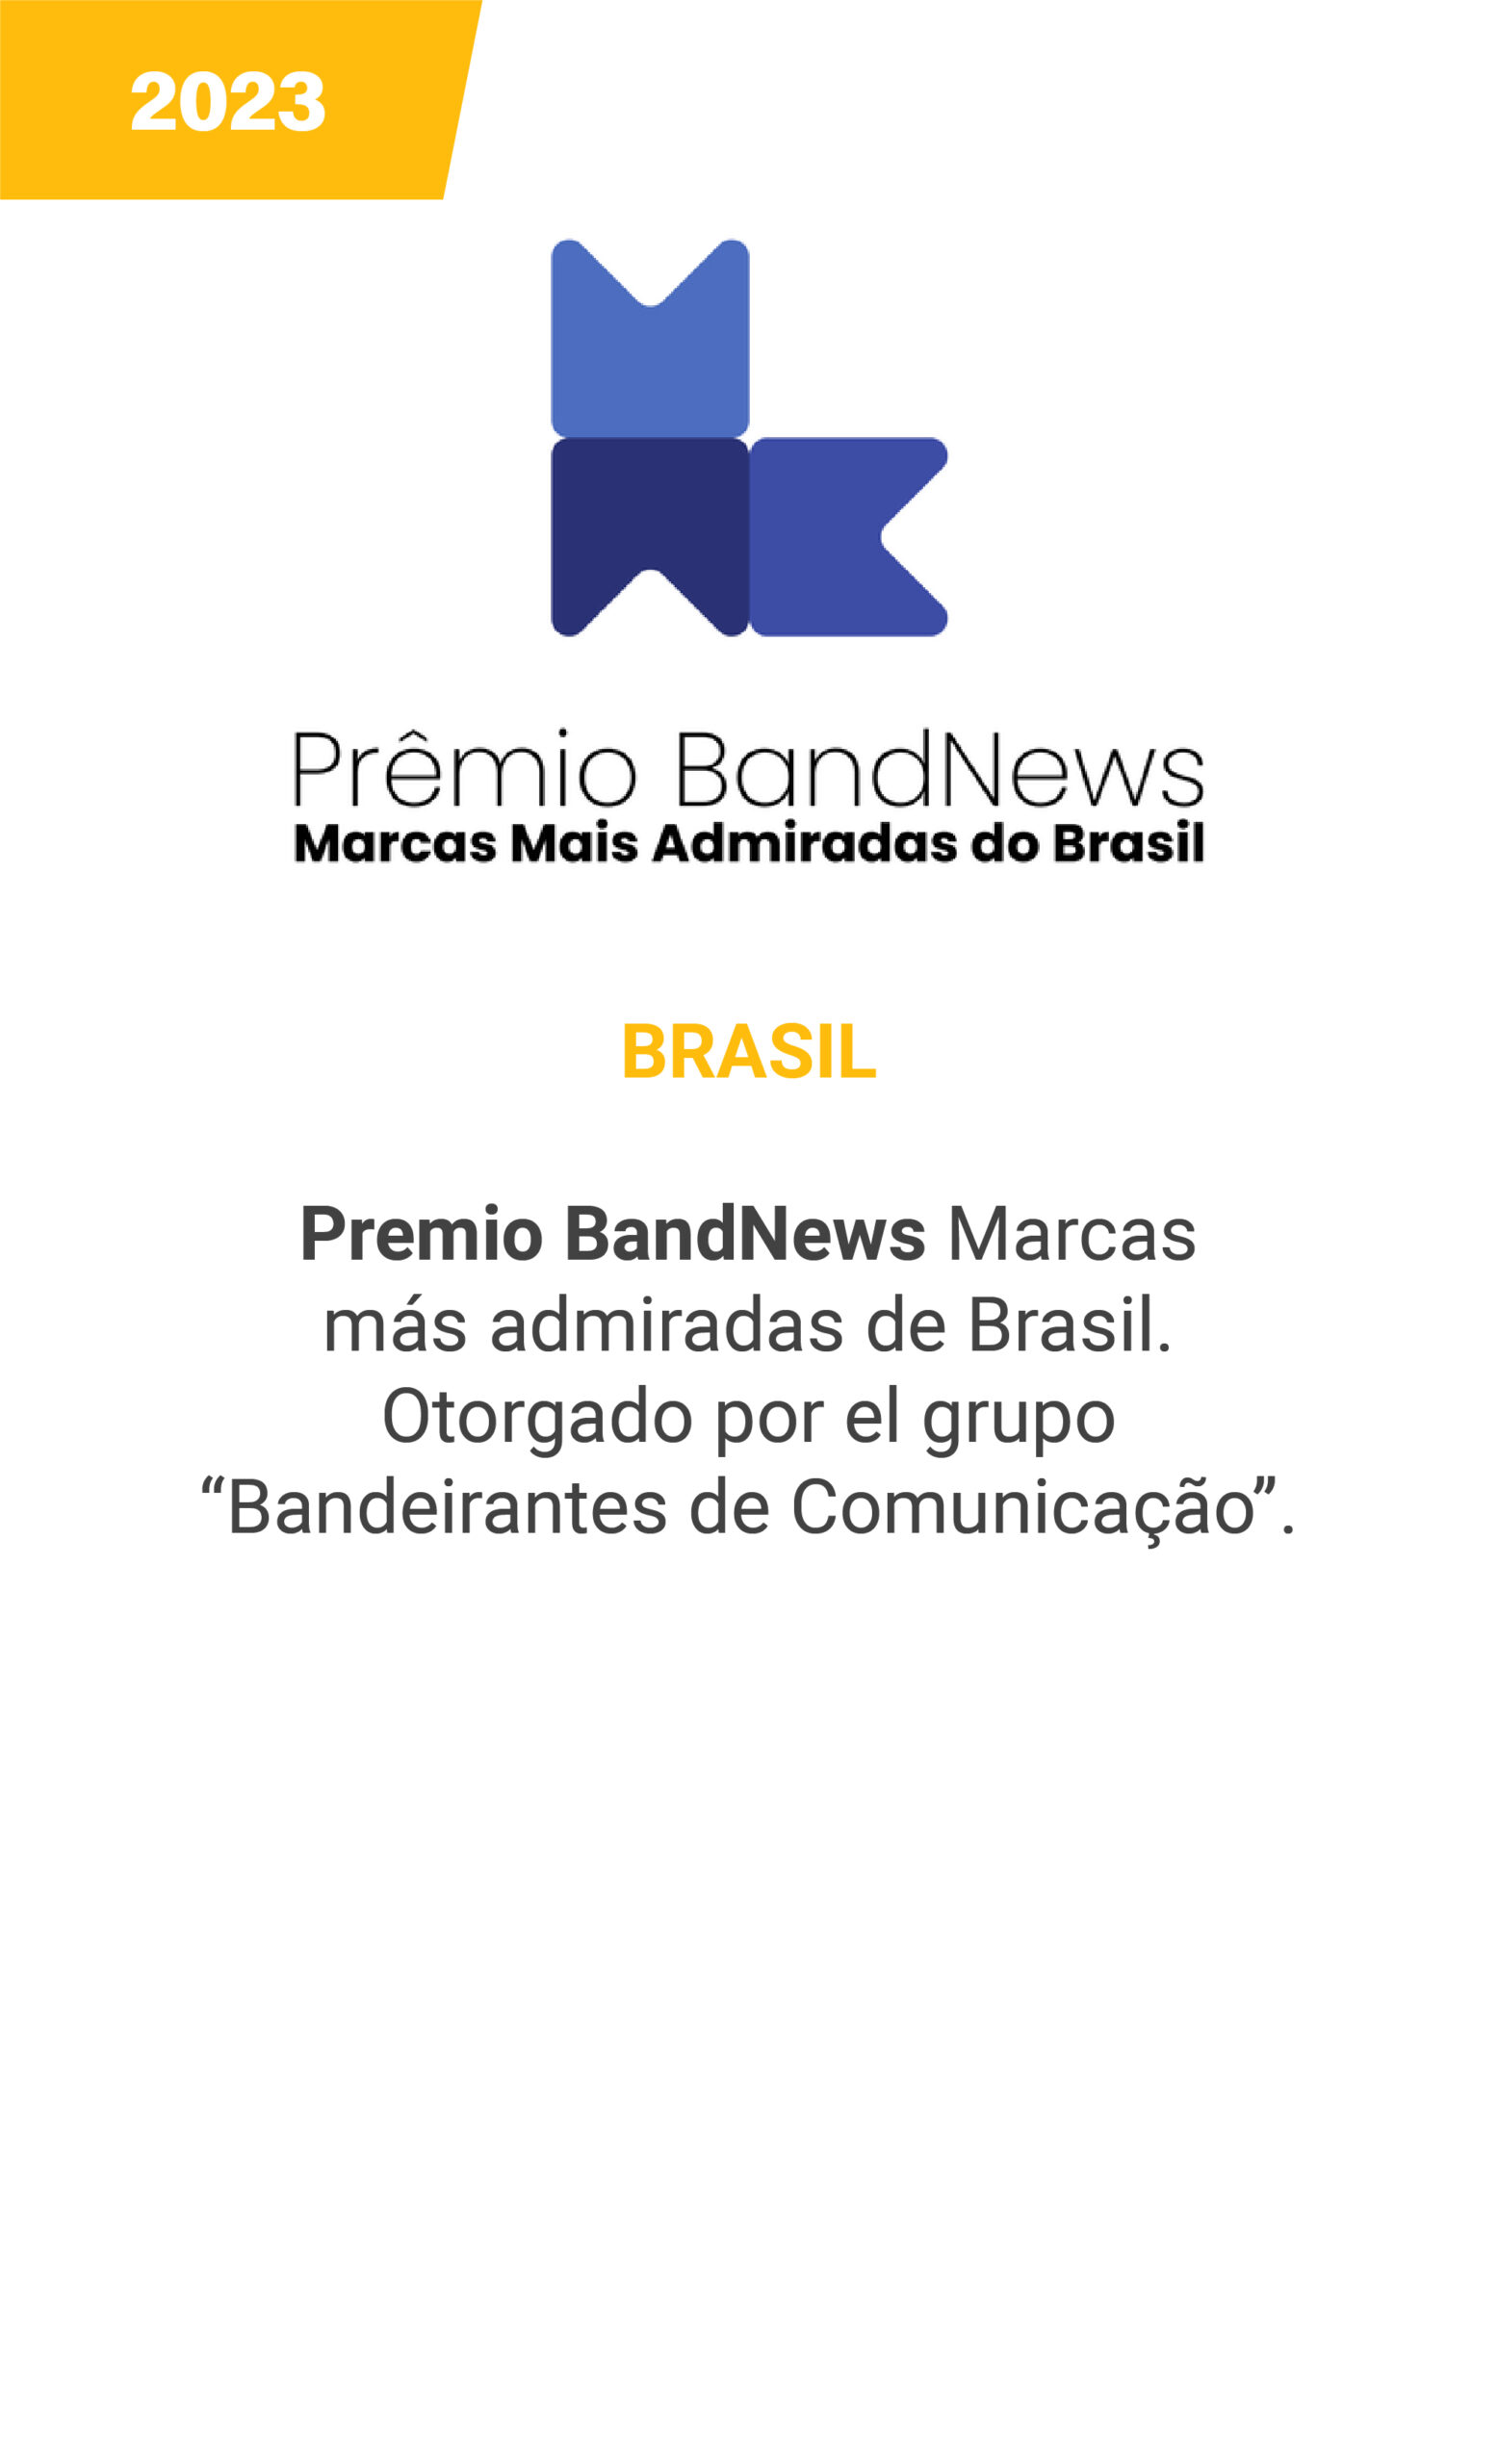 BrandNews - Brasil - 2023 - mobile